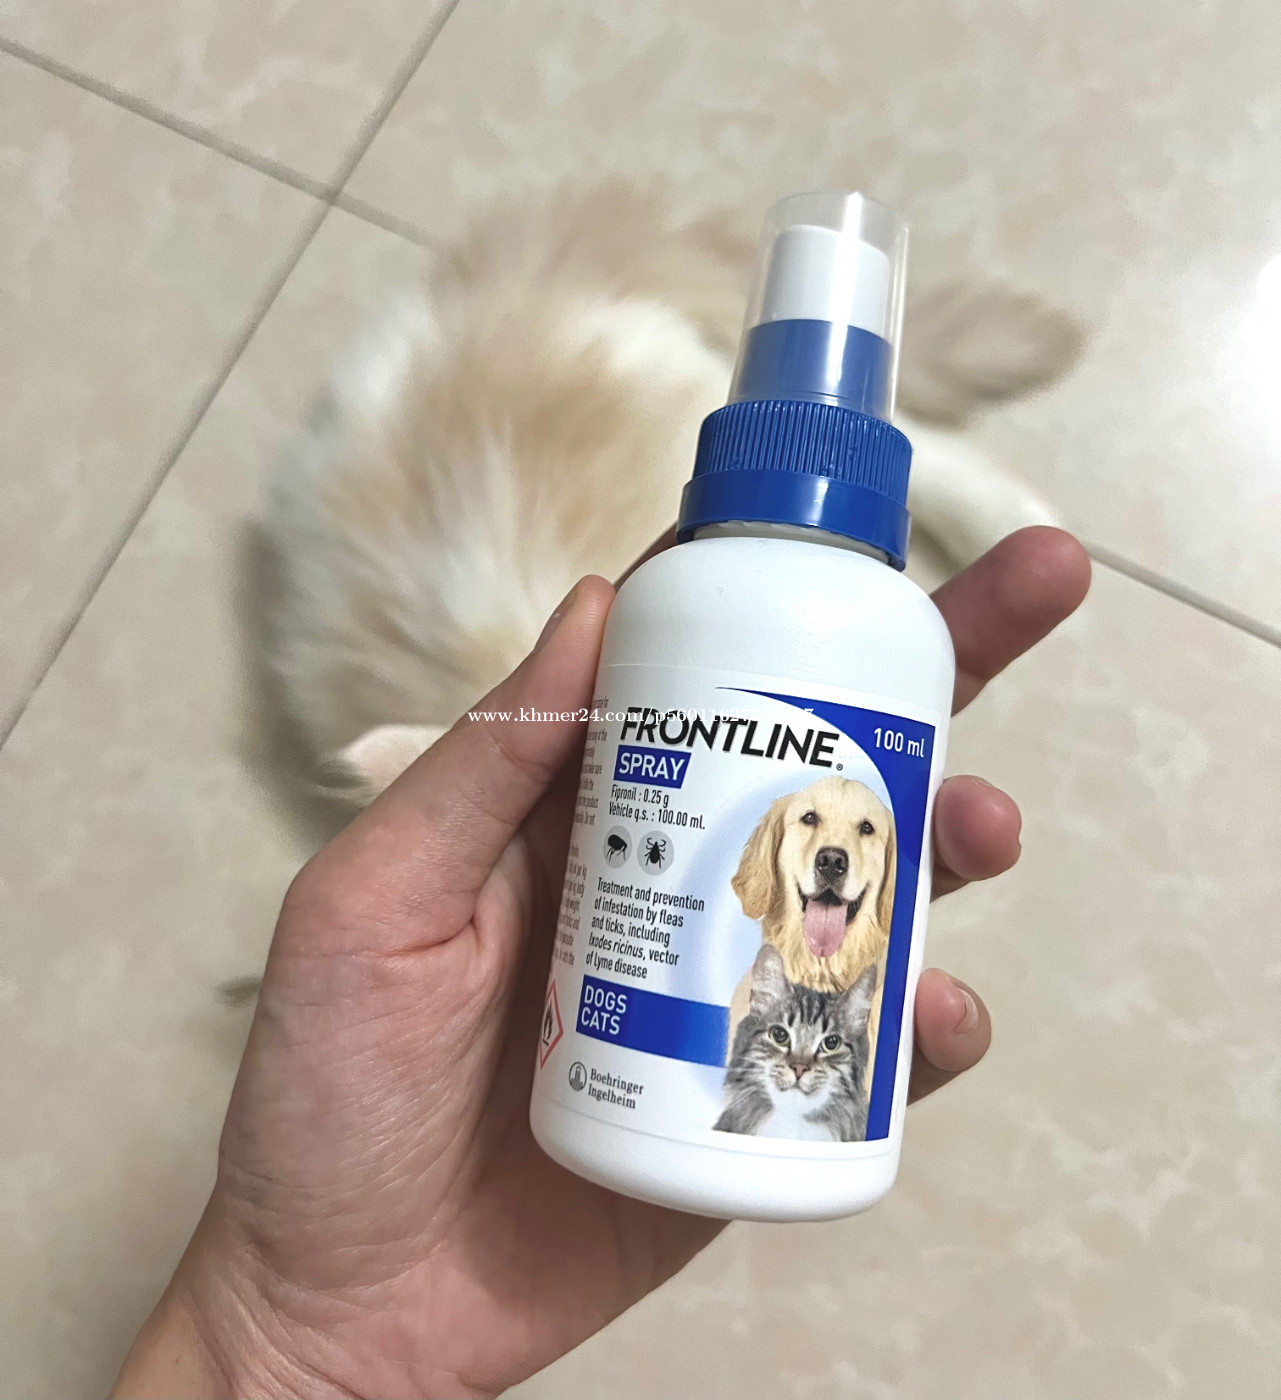 Frontline Spray for dogs & cats Price $7.00 in Phnom Penh, Cambodia - Danet